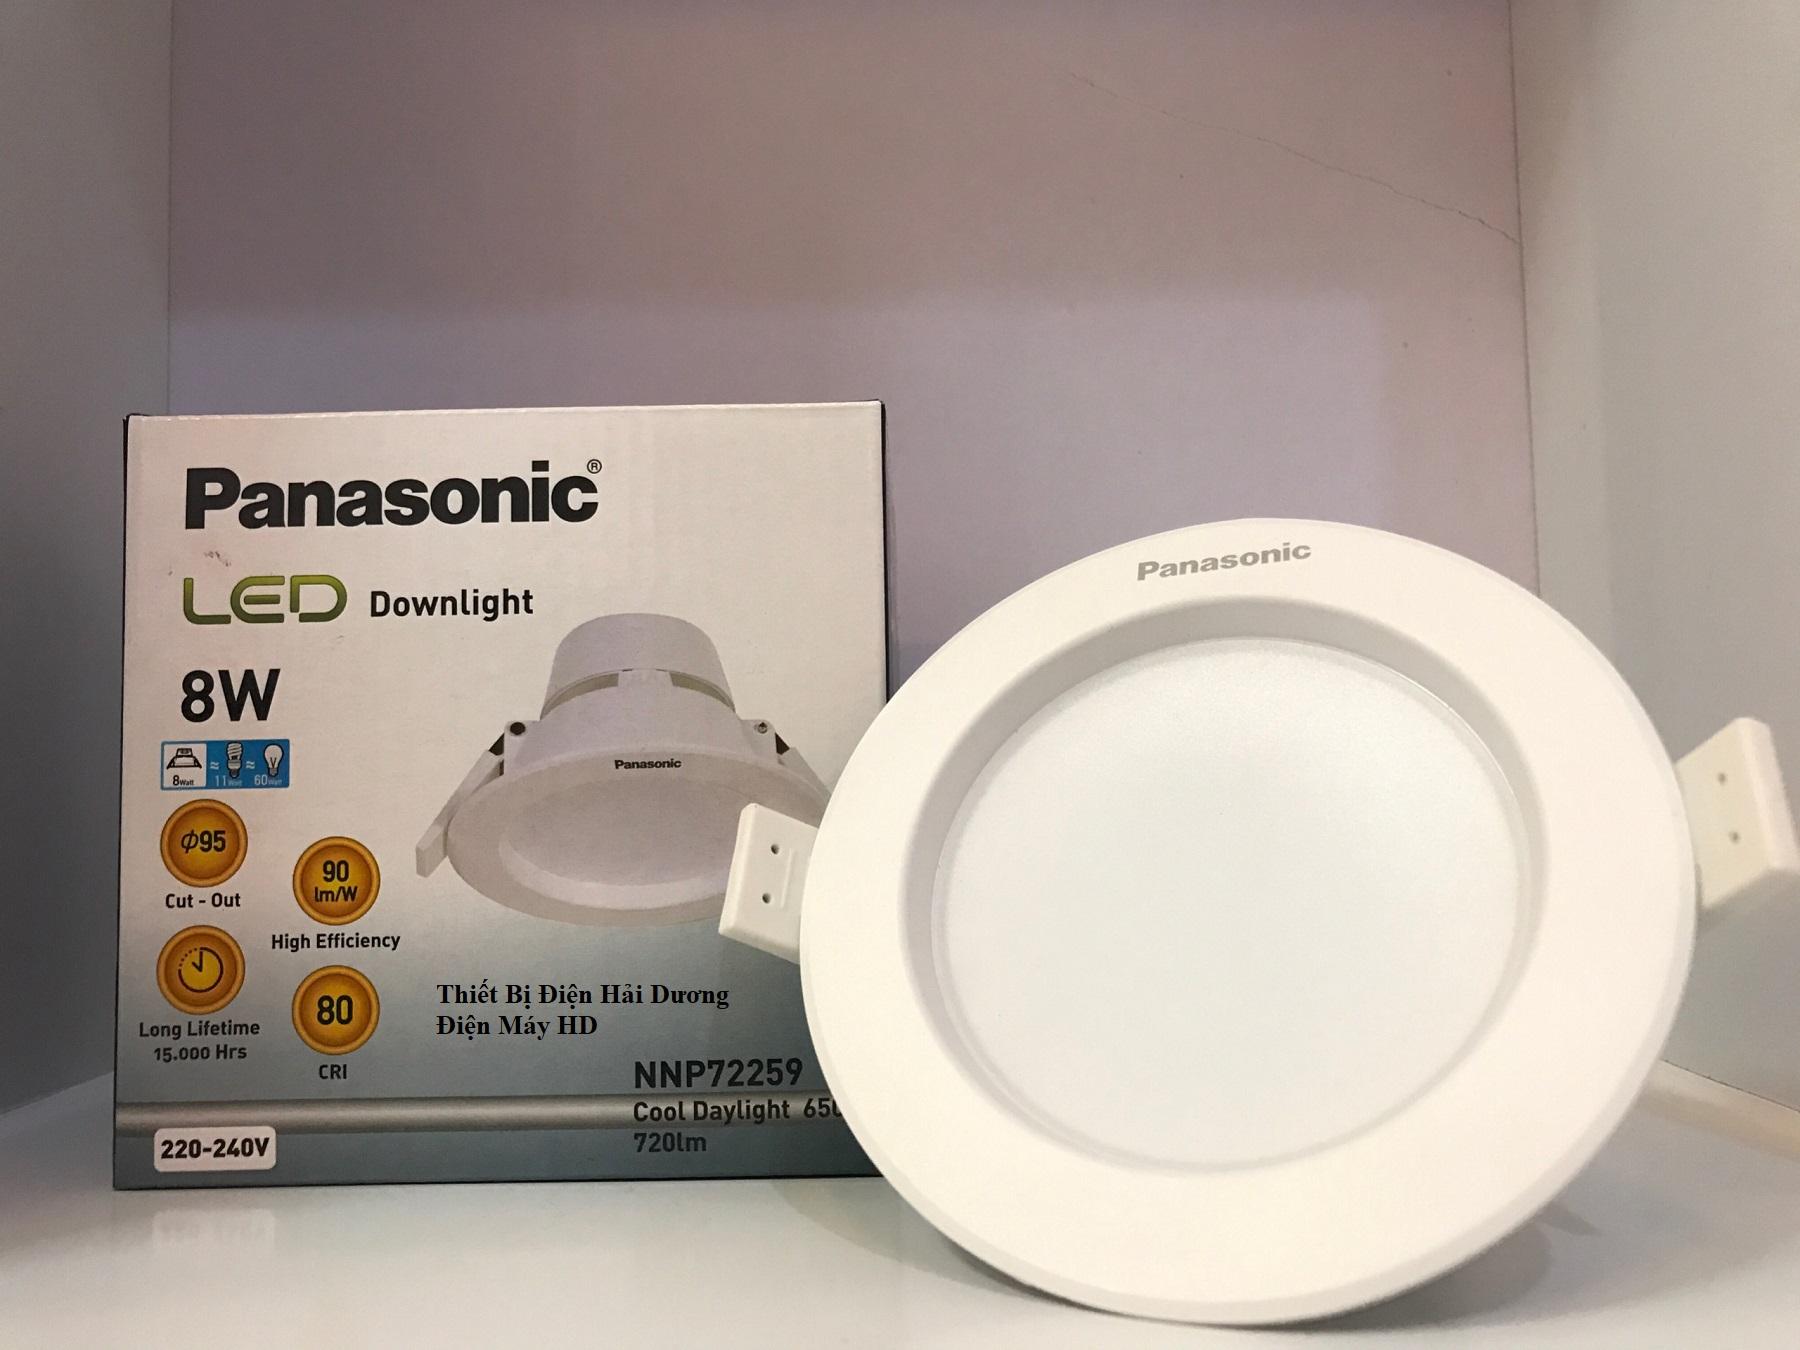 Bộ 3 Đèn Panasonic LED Downlight âm trần NNP72249/59 8W (Trắng/Vàng)